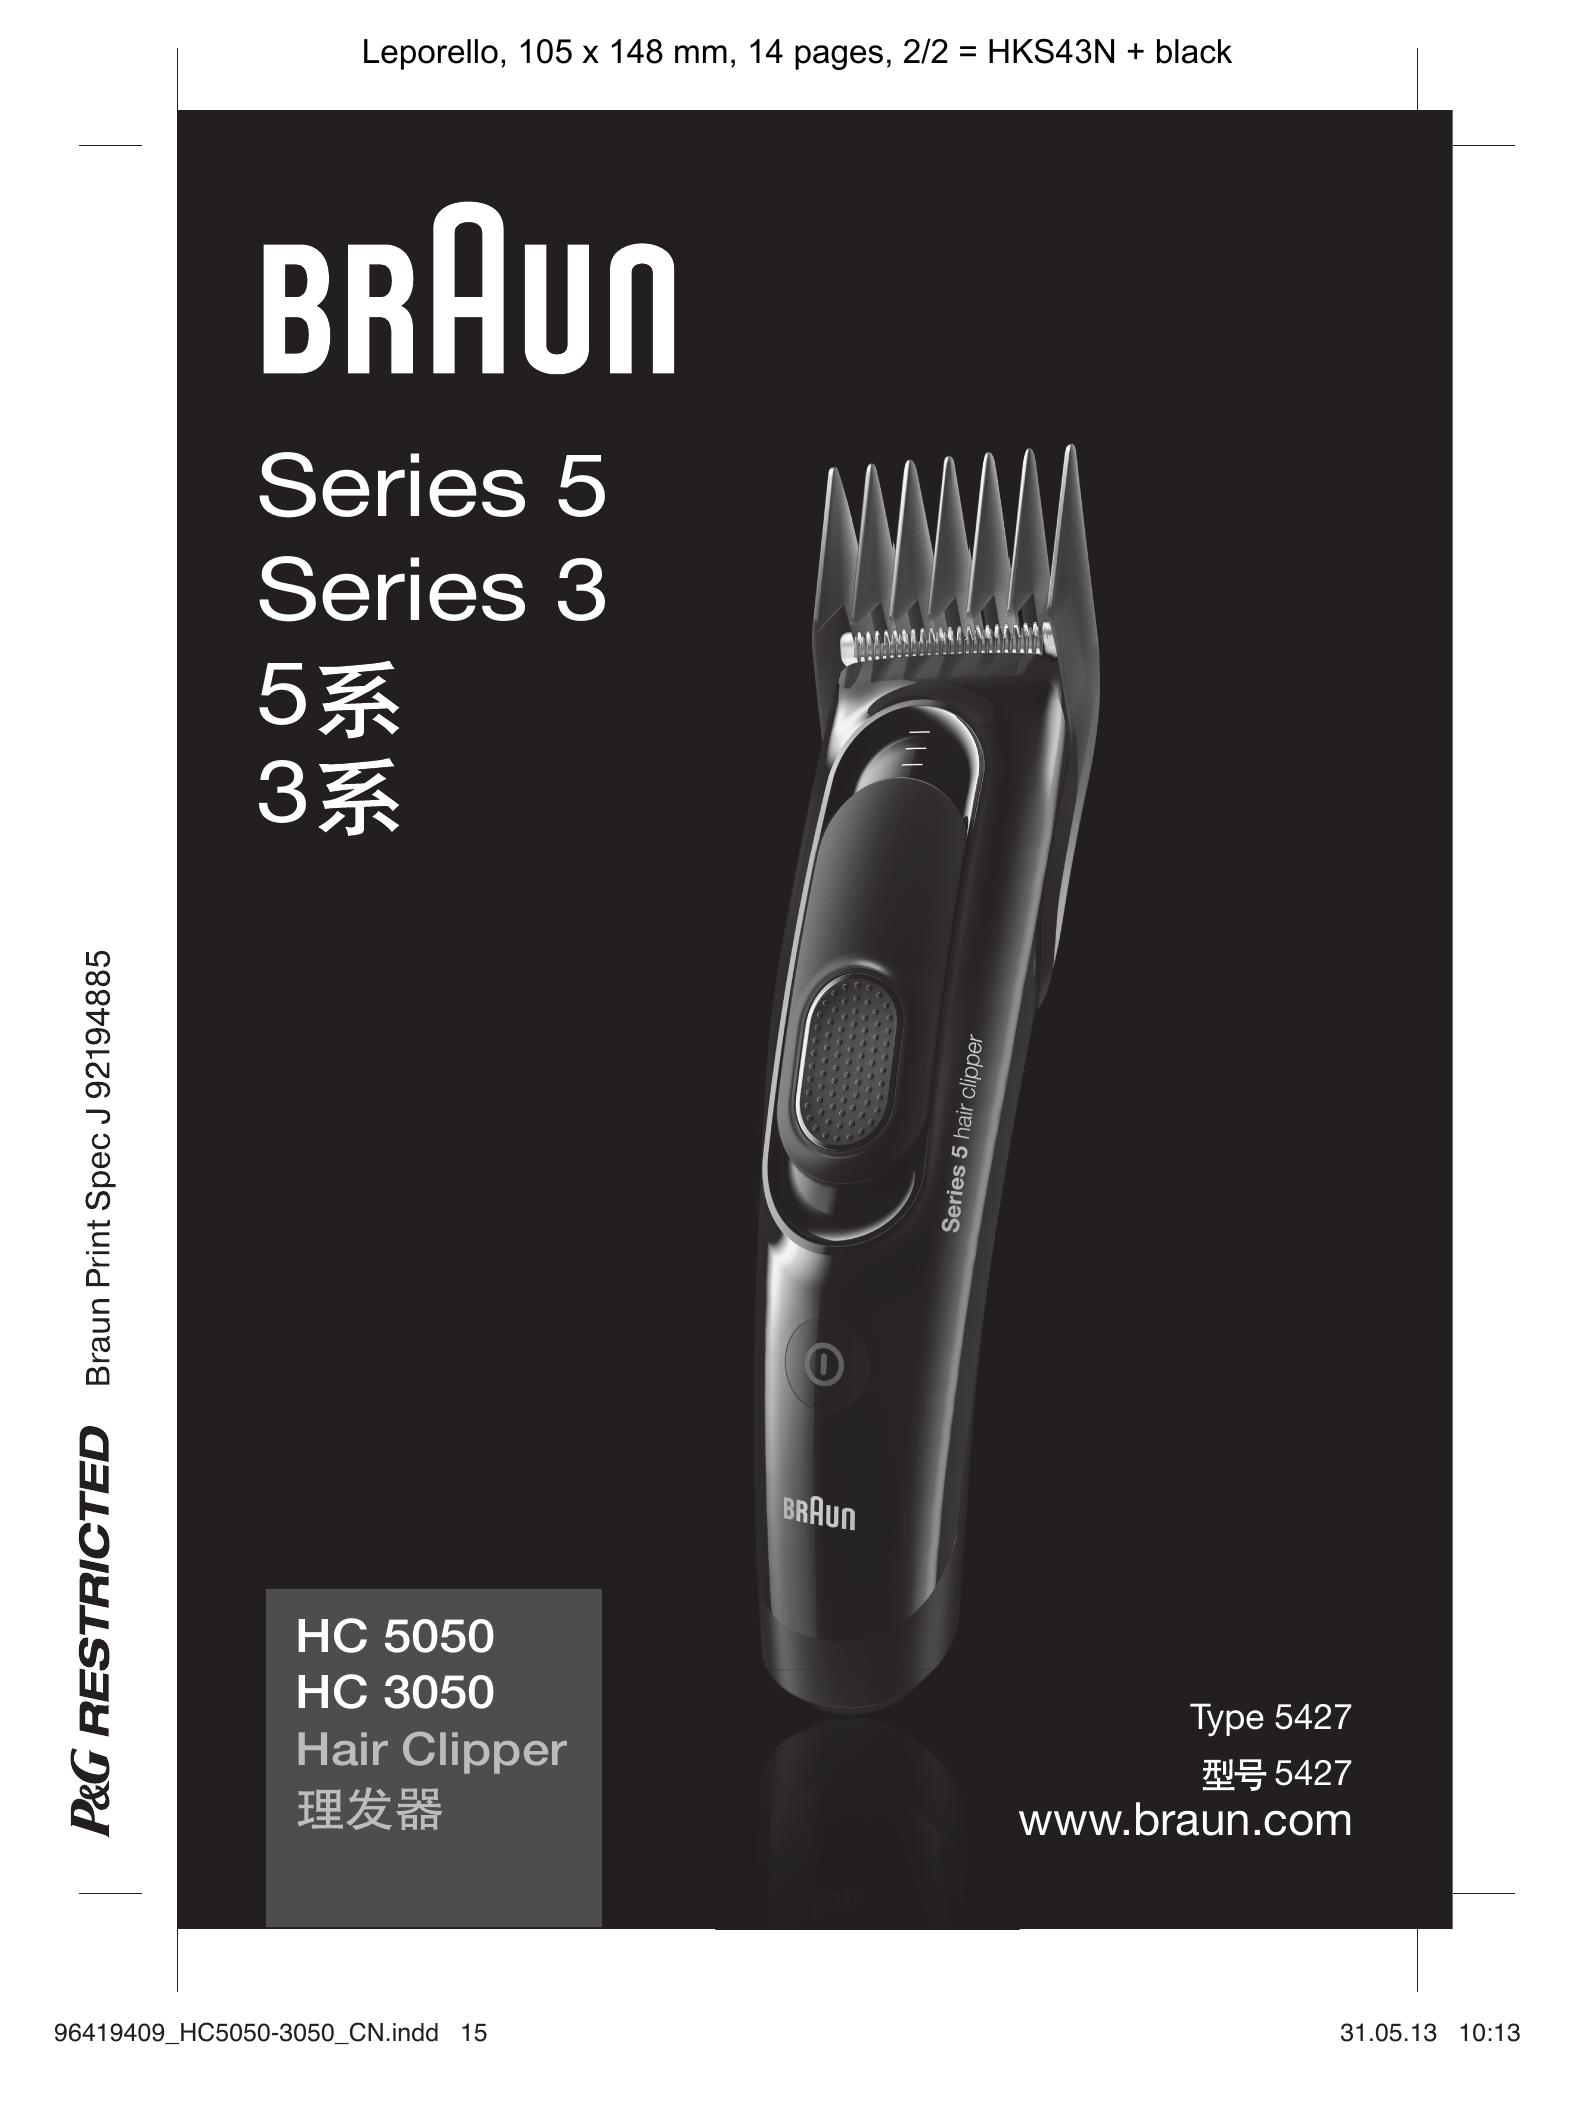 Braun HC 3050 Hair Clippers User Manual